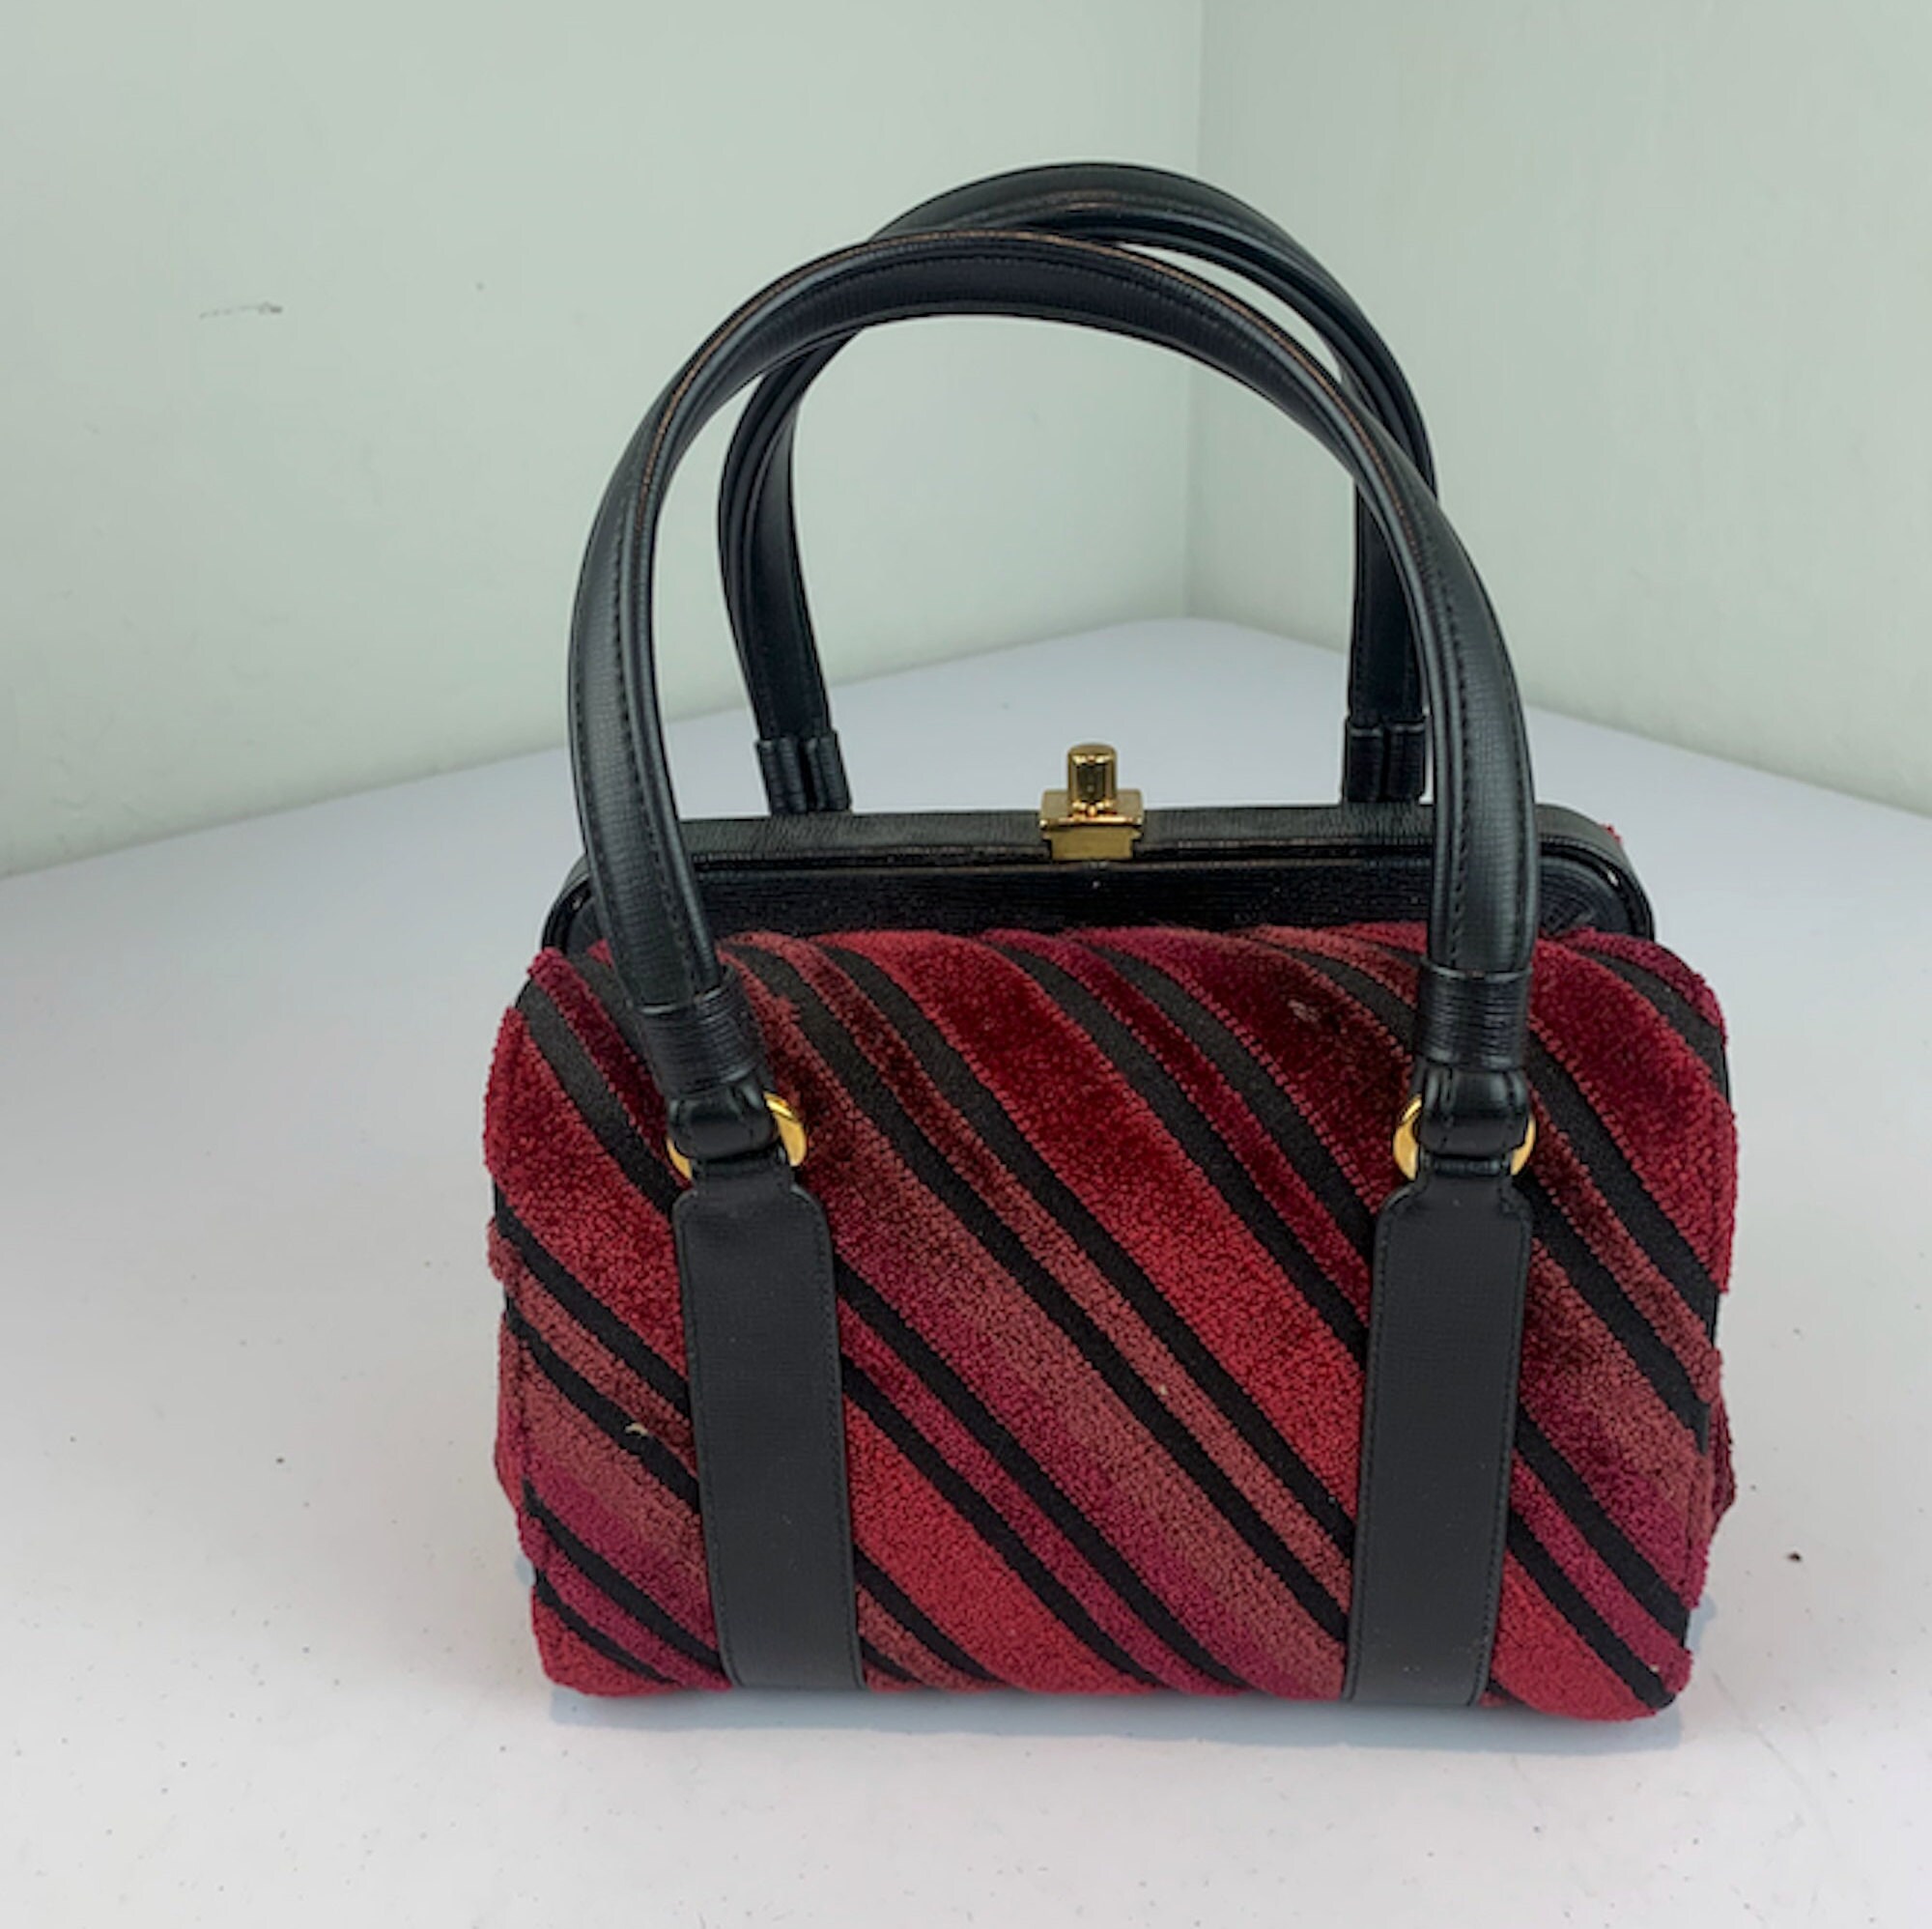 Handbags – Lux de Ville